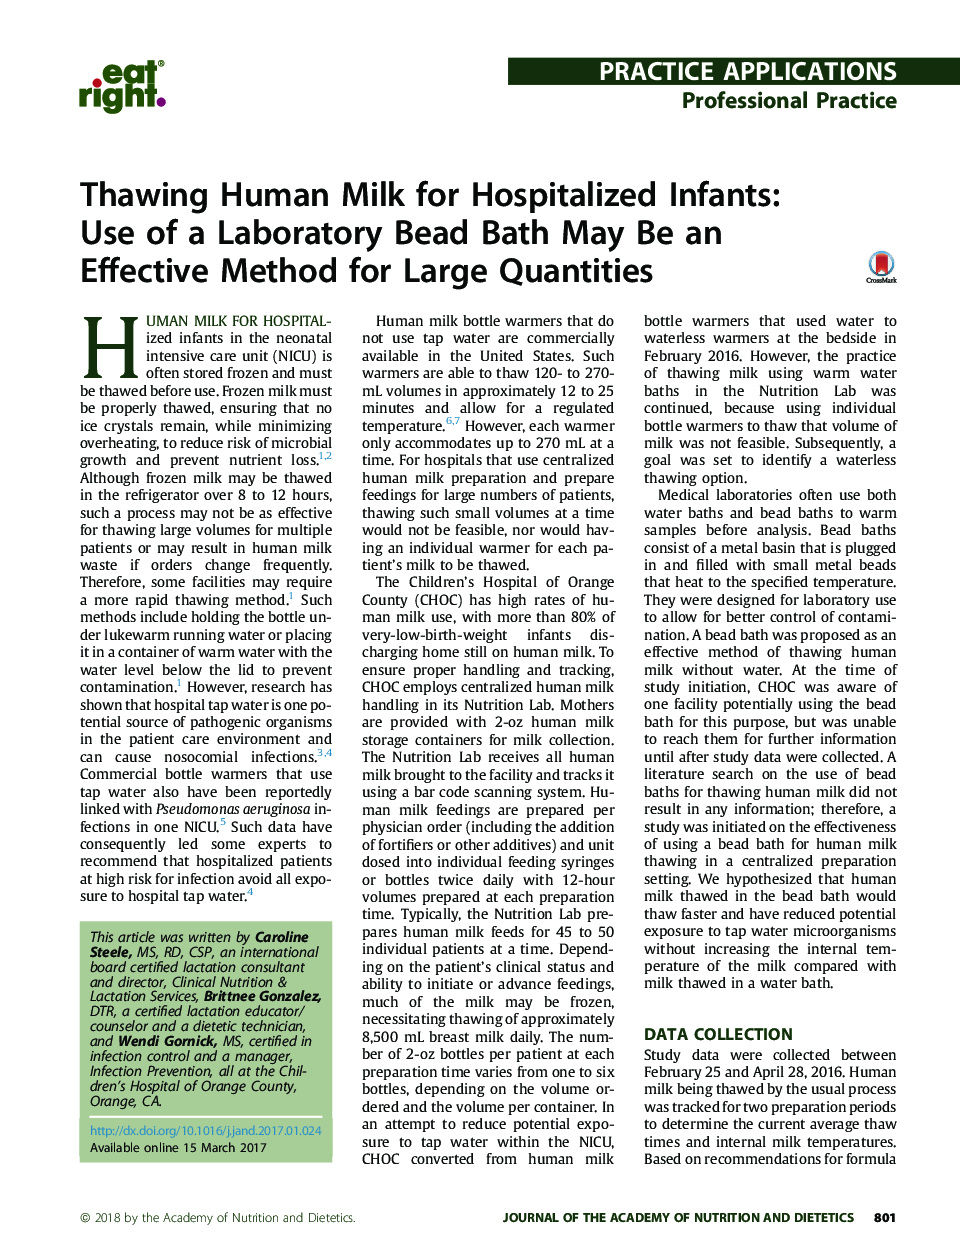 انجماد شیر انسان برای نوزادان بیمارستانی: استفاده از حمام عروسک آزمایشگاهی می تواند یک روش موثر برای مقدار زیادی باشد 